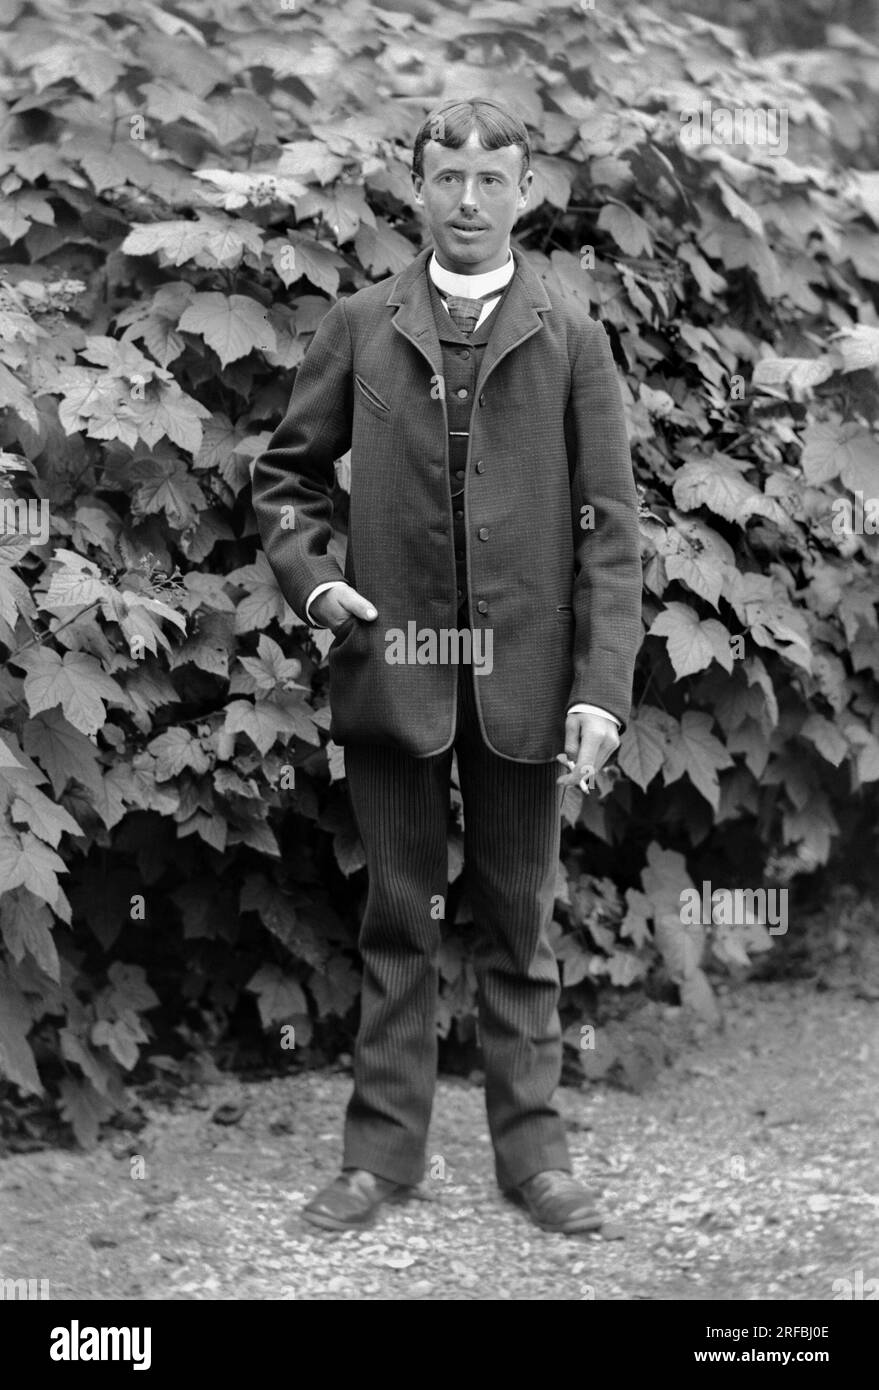 Jeune homme a la Cigarette, employe comme homme a tout faire, posant dans le jardin de l'abbaye de Septfontaines, Pres de Bourmont en Haute-Marne (Haute Marne), vers 1880. Fotografie. Kollektion Ducos. Stockfoto